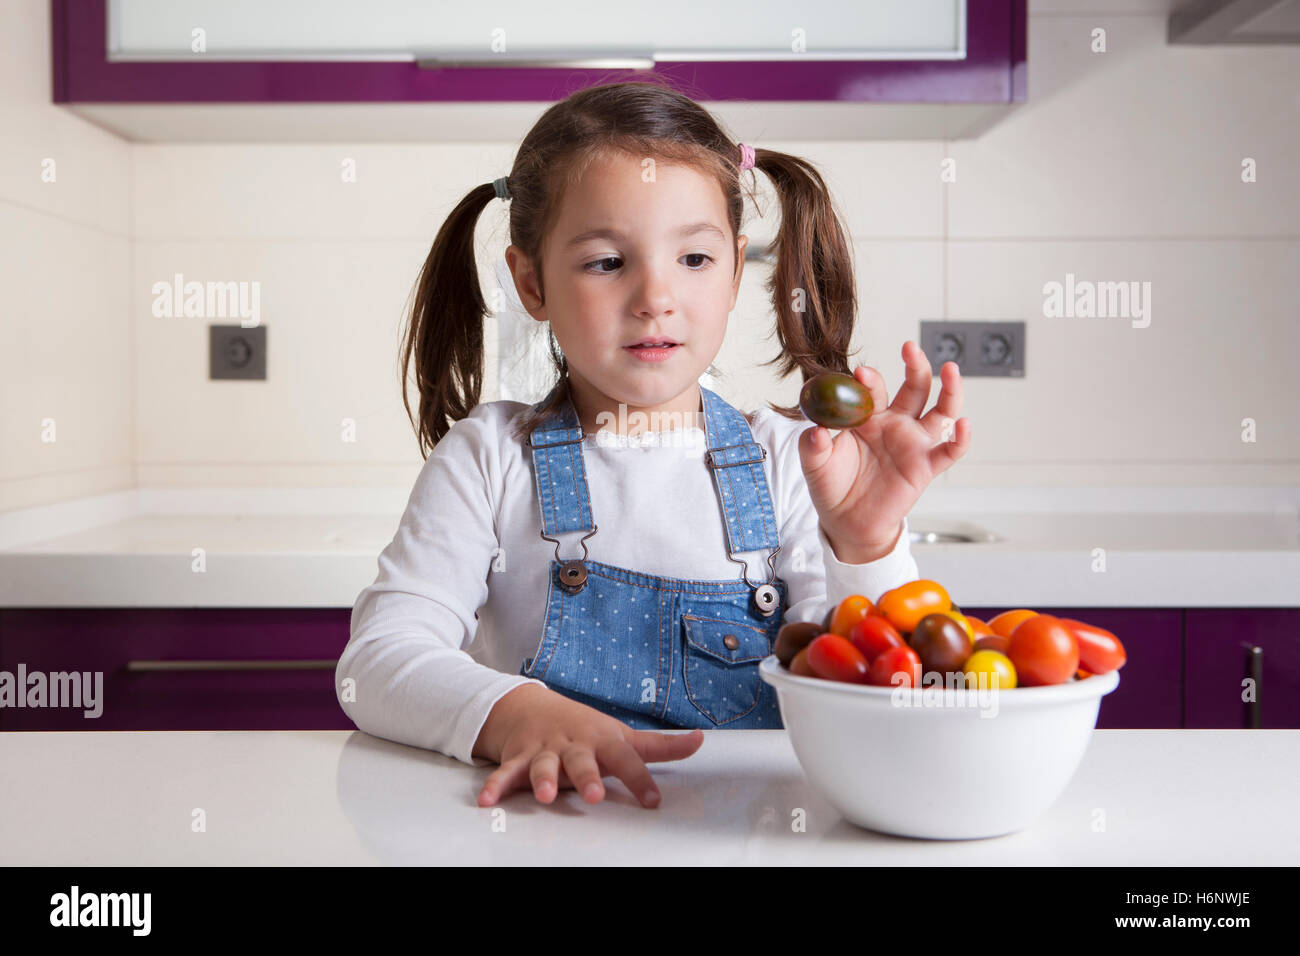 Kleines Mädchen mit Kirsche Kumato Tomaten in ihrer Hand. Aufklärung über gesunde Ernährung für Kinder Stockfoto